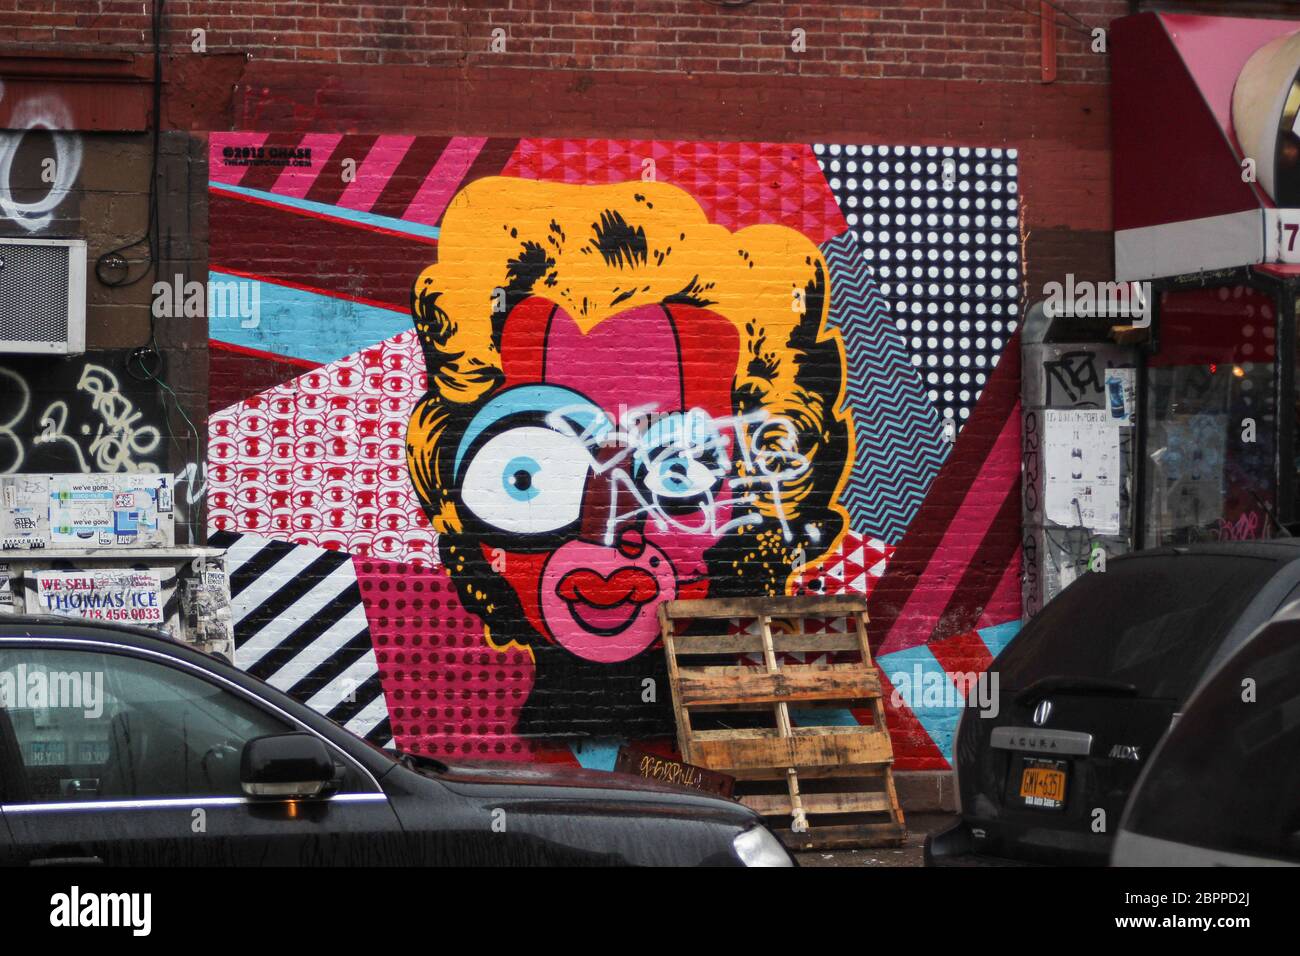 Geezer Monroe, eine Pop Art Revision von Marilyn Monroe von The Art of Chase, im Stadtteil Williamsburg in Brooklyn, New York City, USA Stockfoto